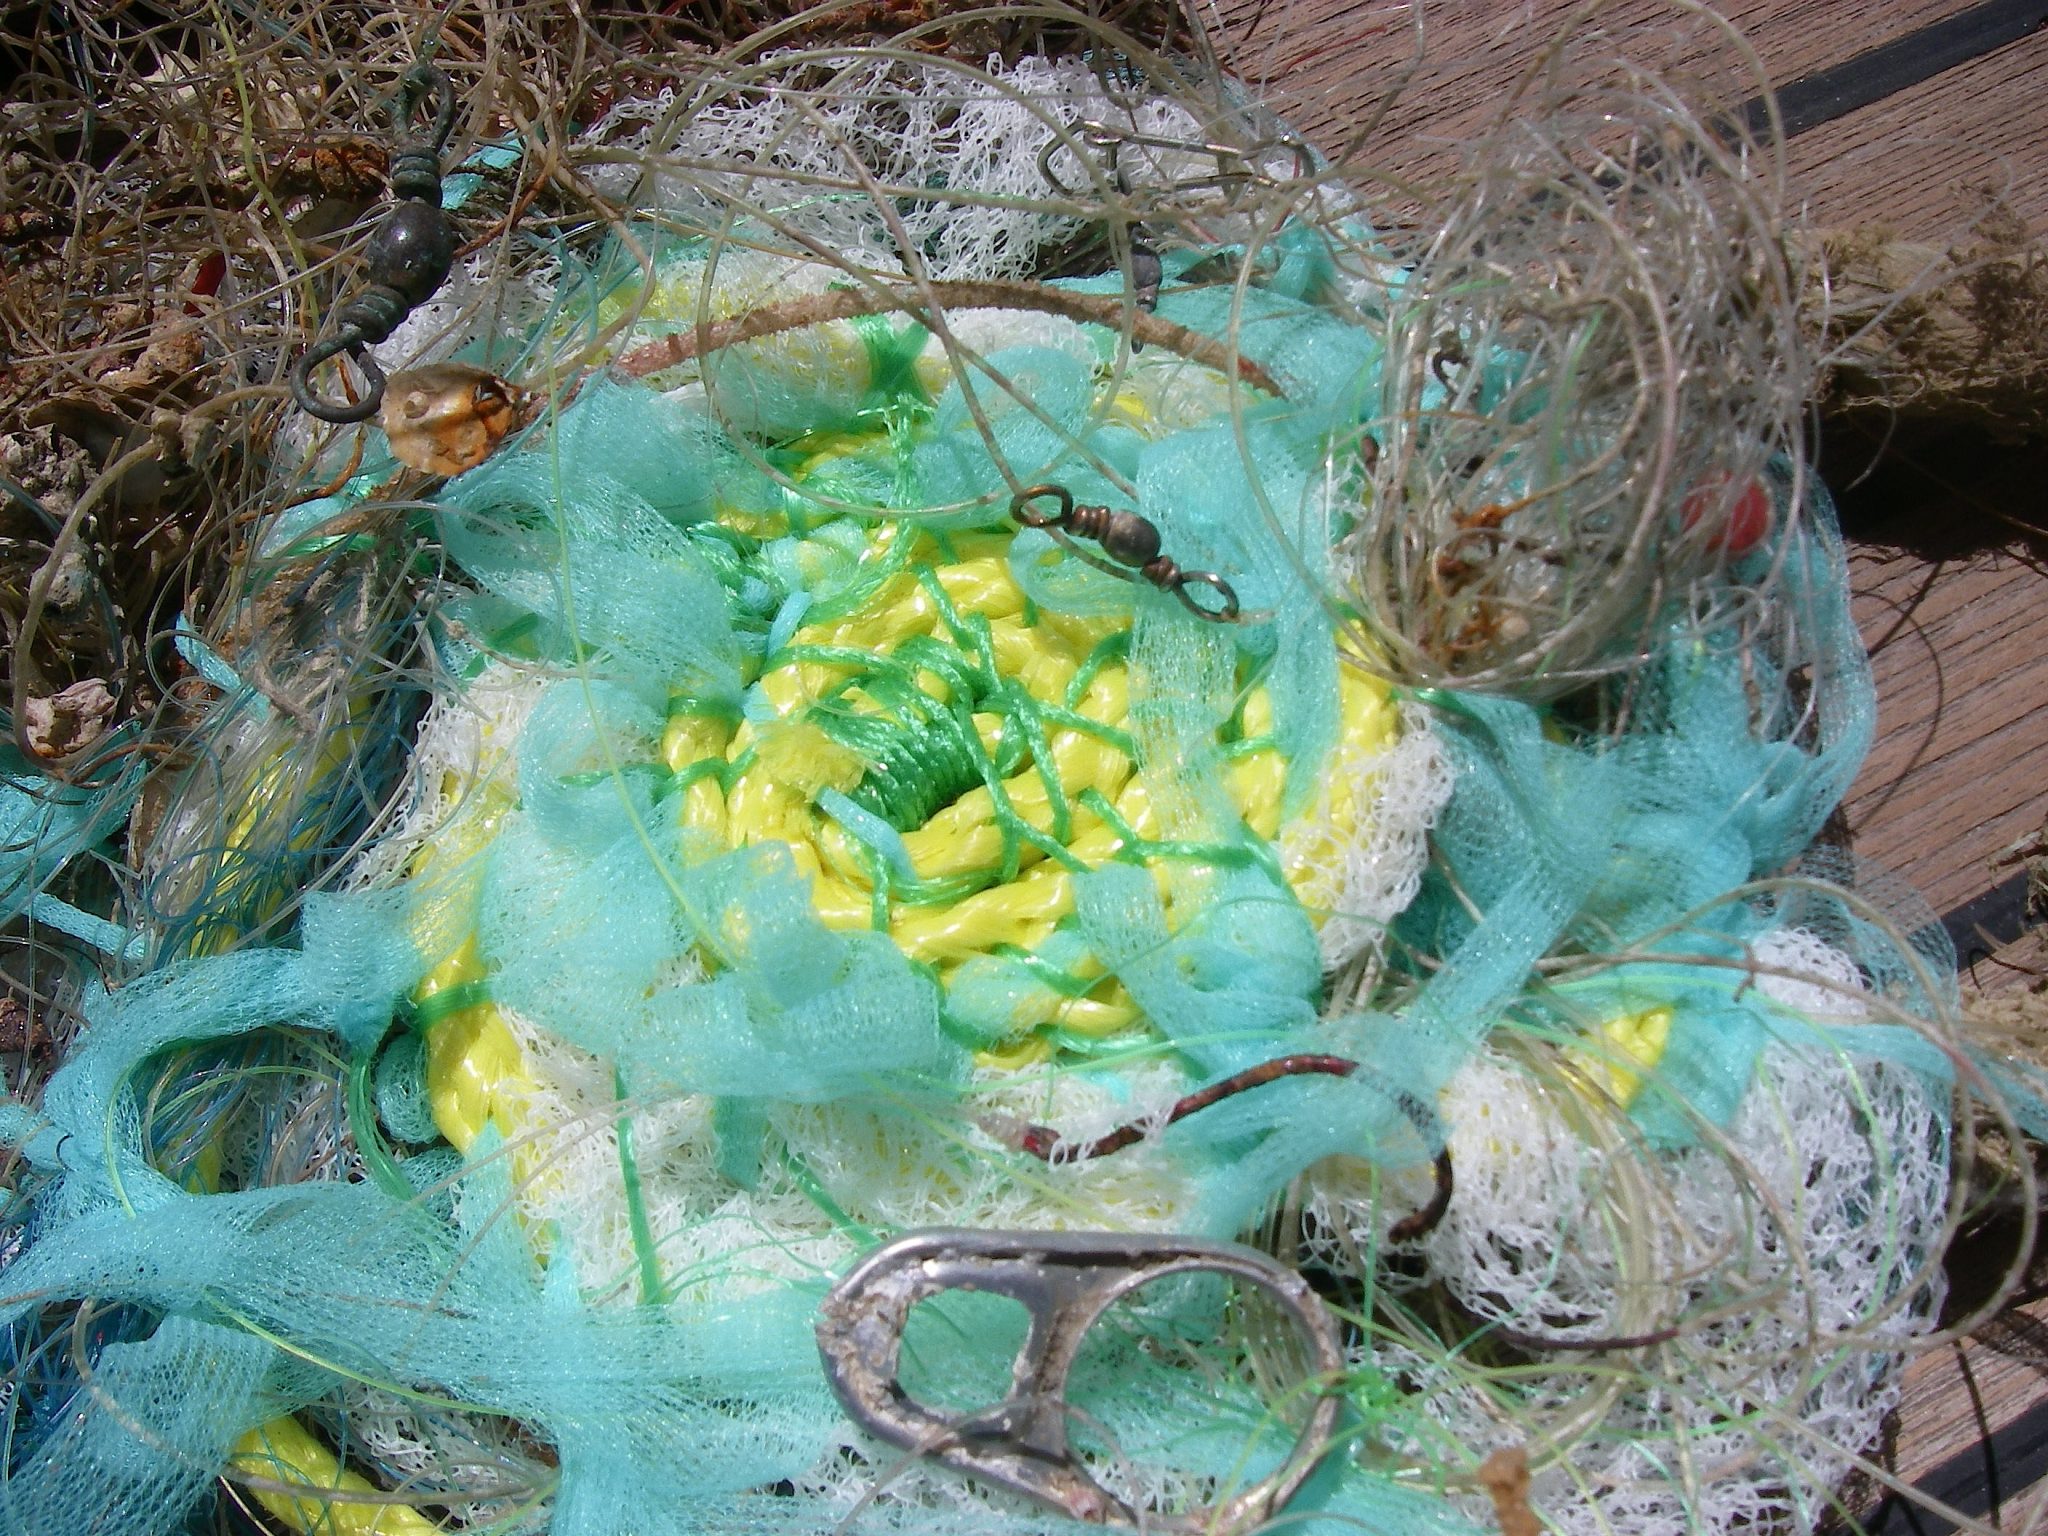 93. New plastic with ocean flotsam plastics, metals, and shells of sea animals